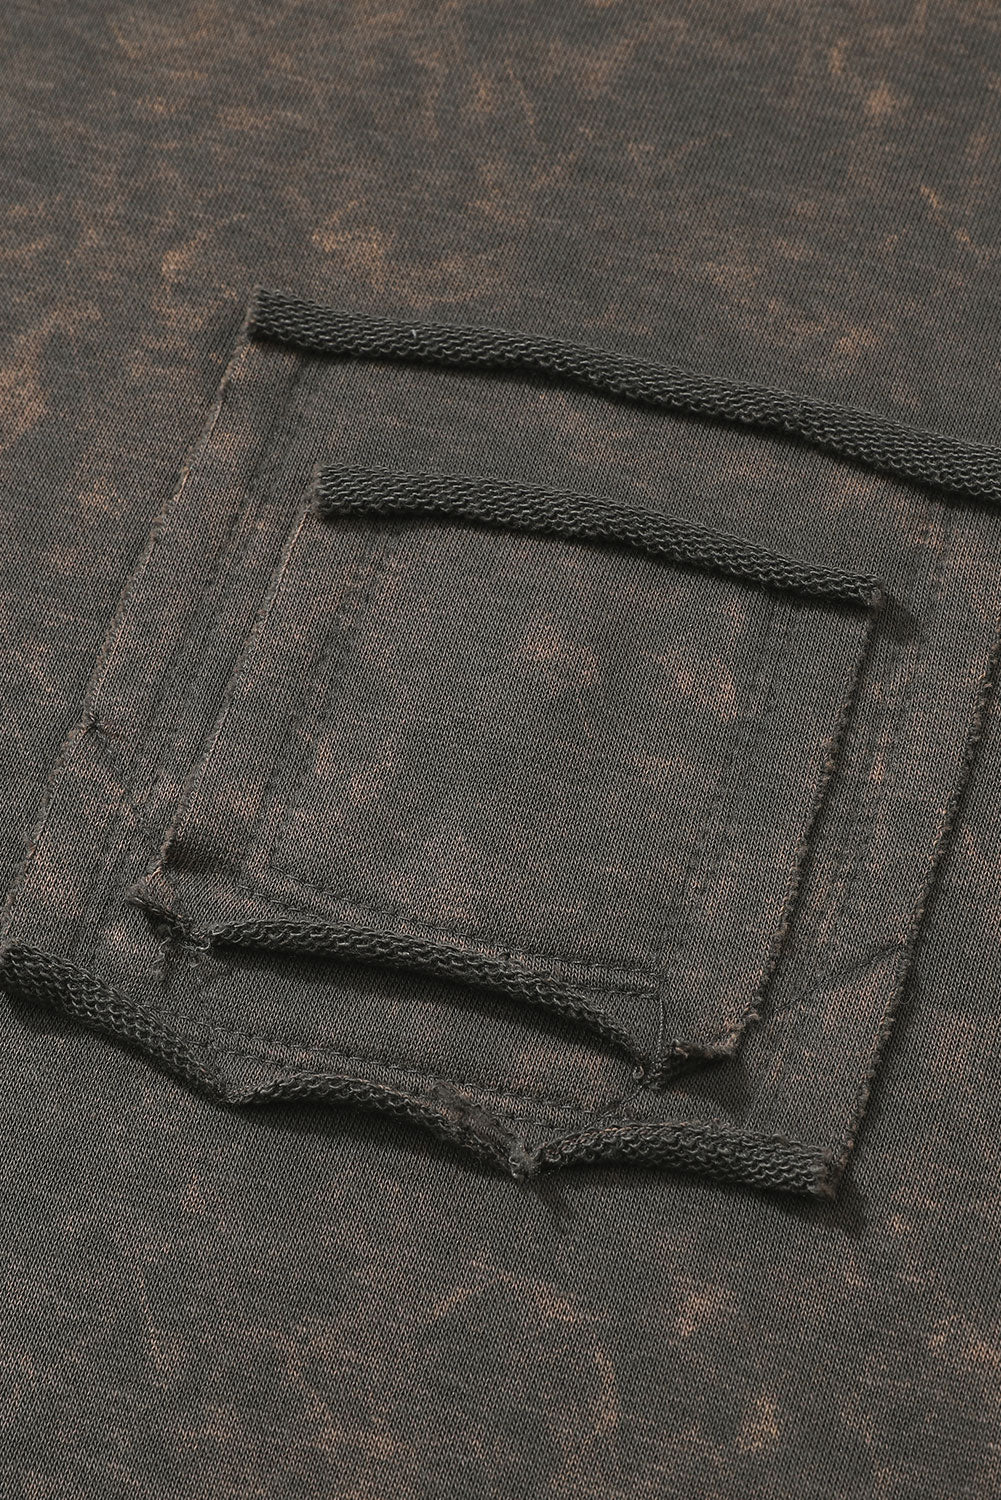 Sweat-shirt gris à manches longues et épaules tombantes délavé à l'acide avec poches